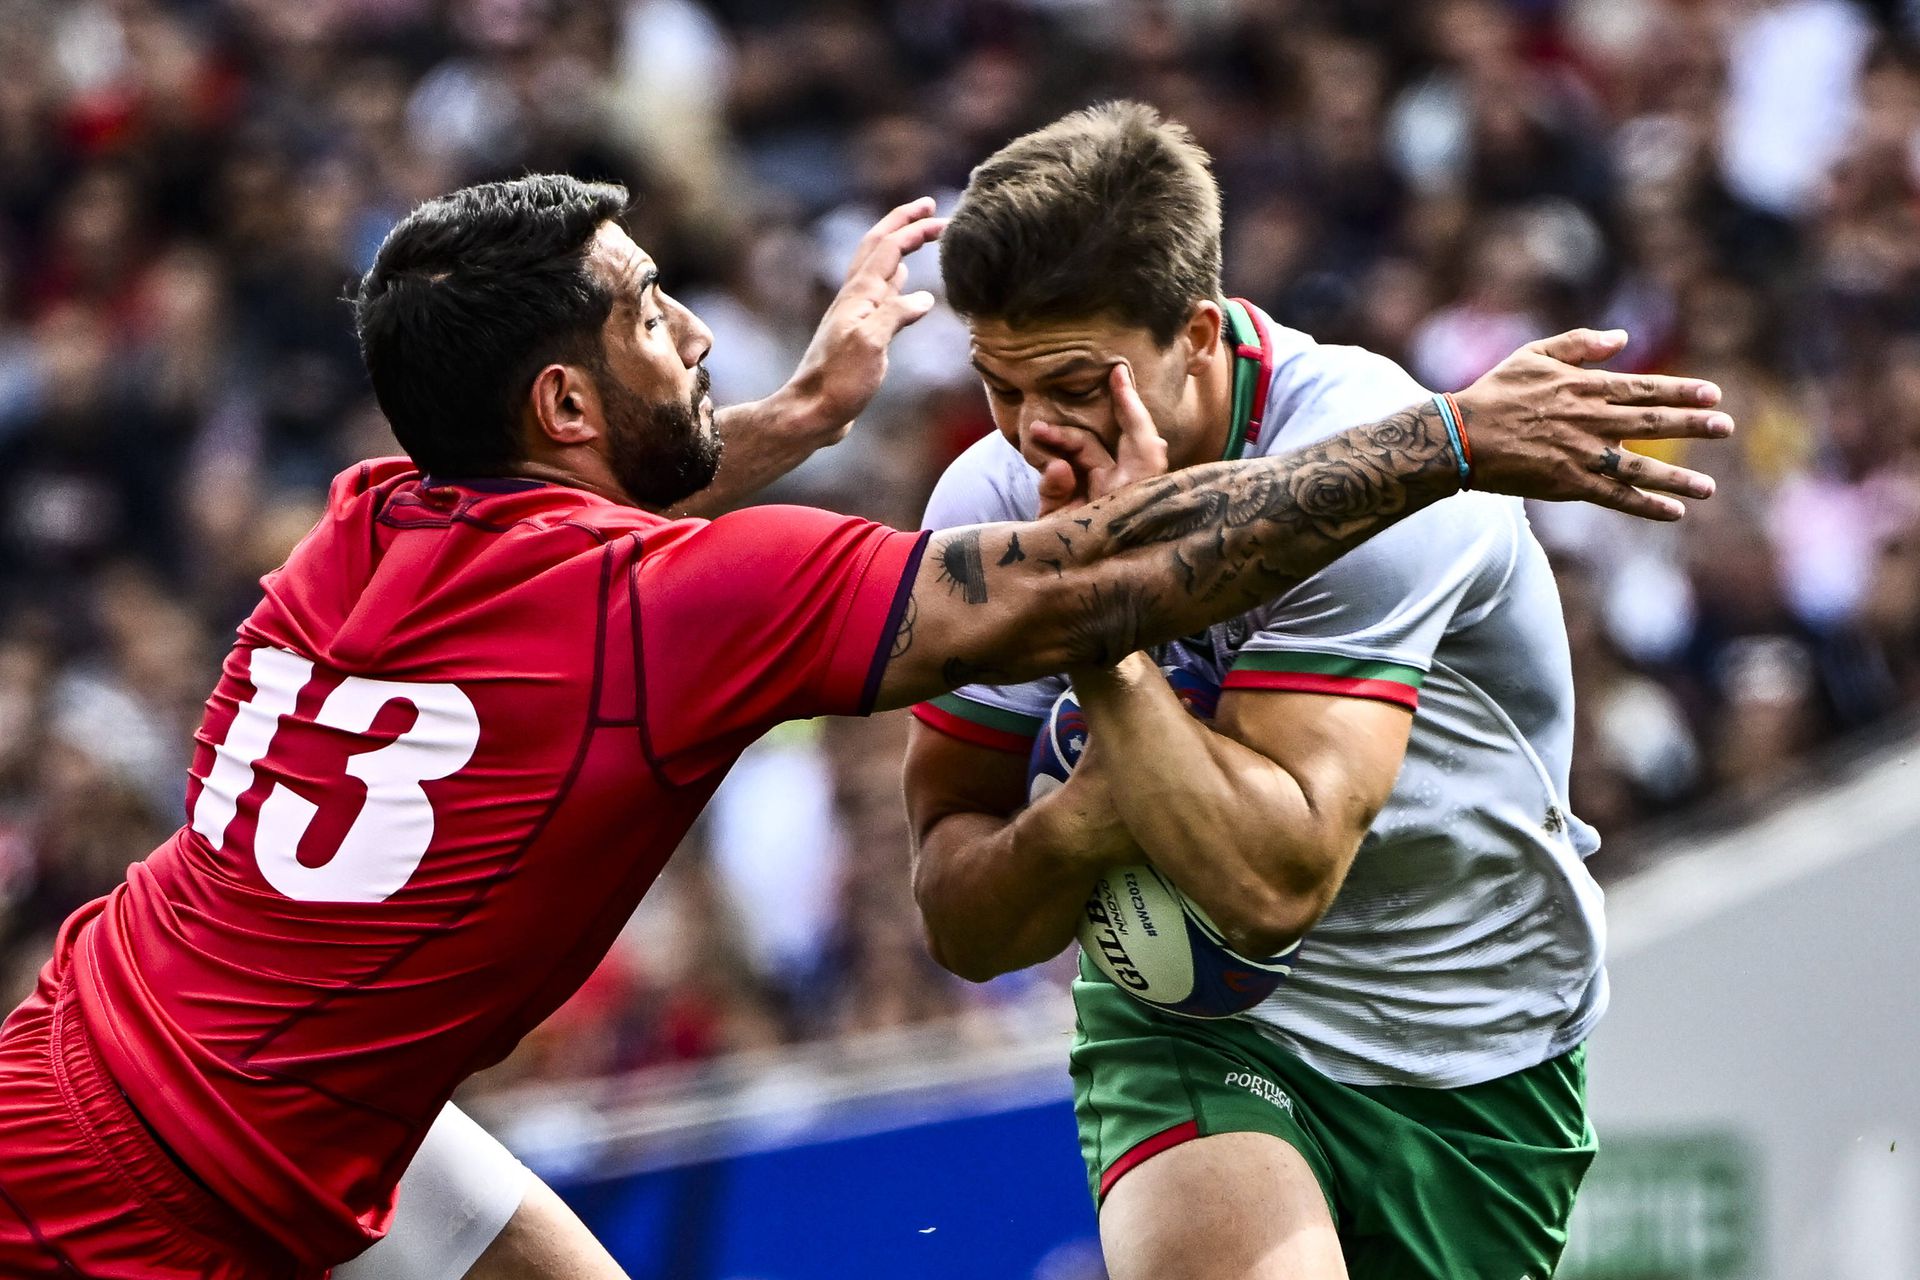 Jogo de rugby entre a geórgia e o conceito de portugal para o torneio de  rugby